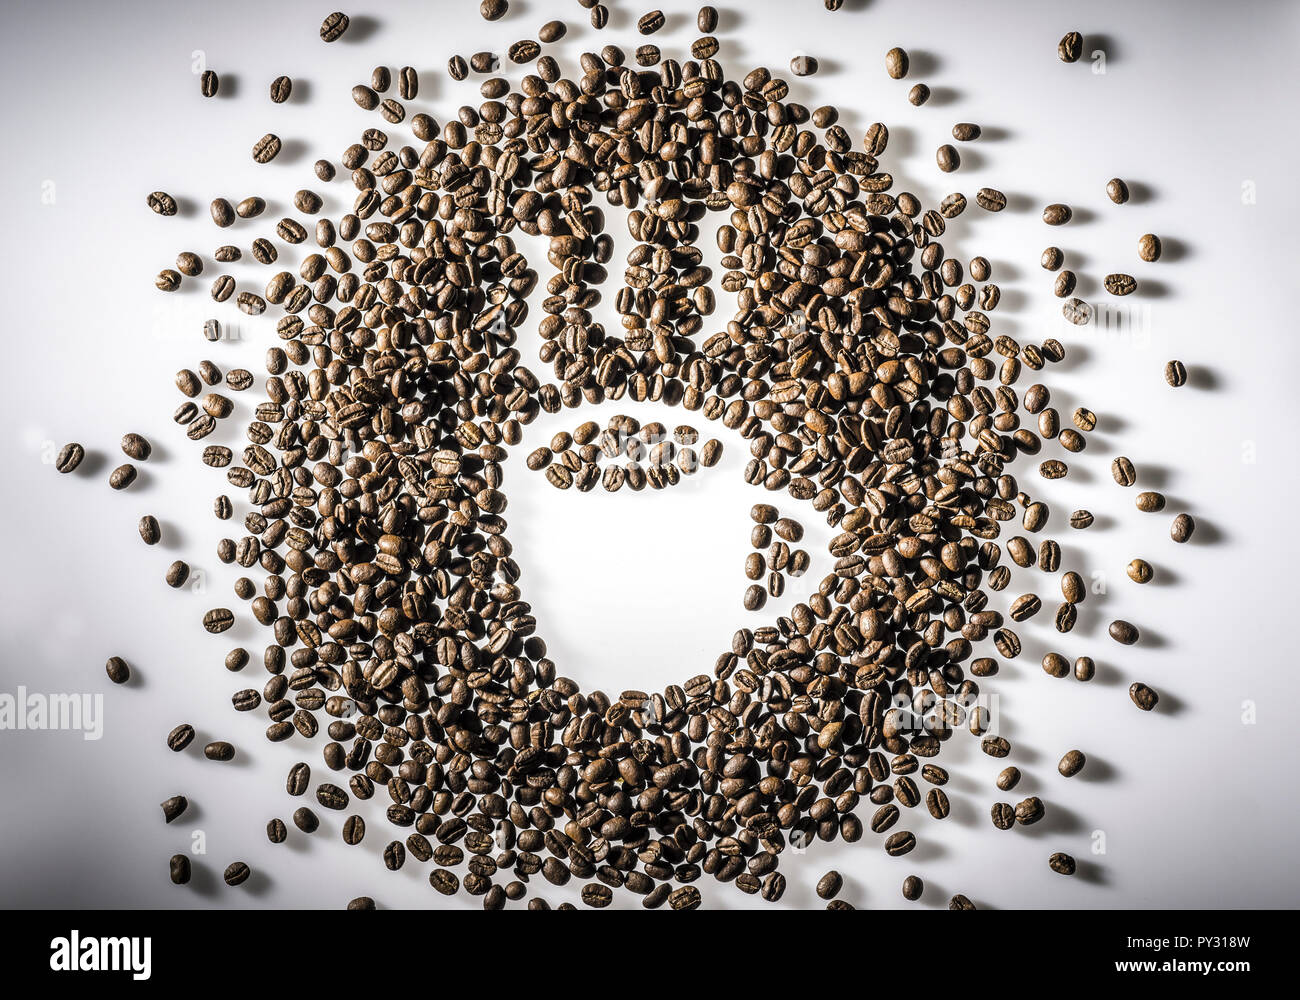 Symbolbild aus Kaffeebohnen Stock Photo